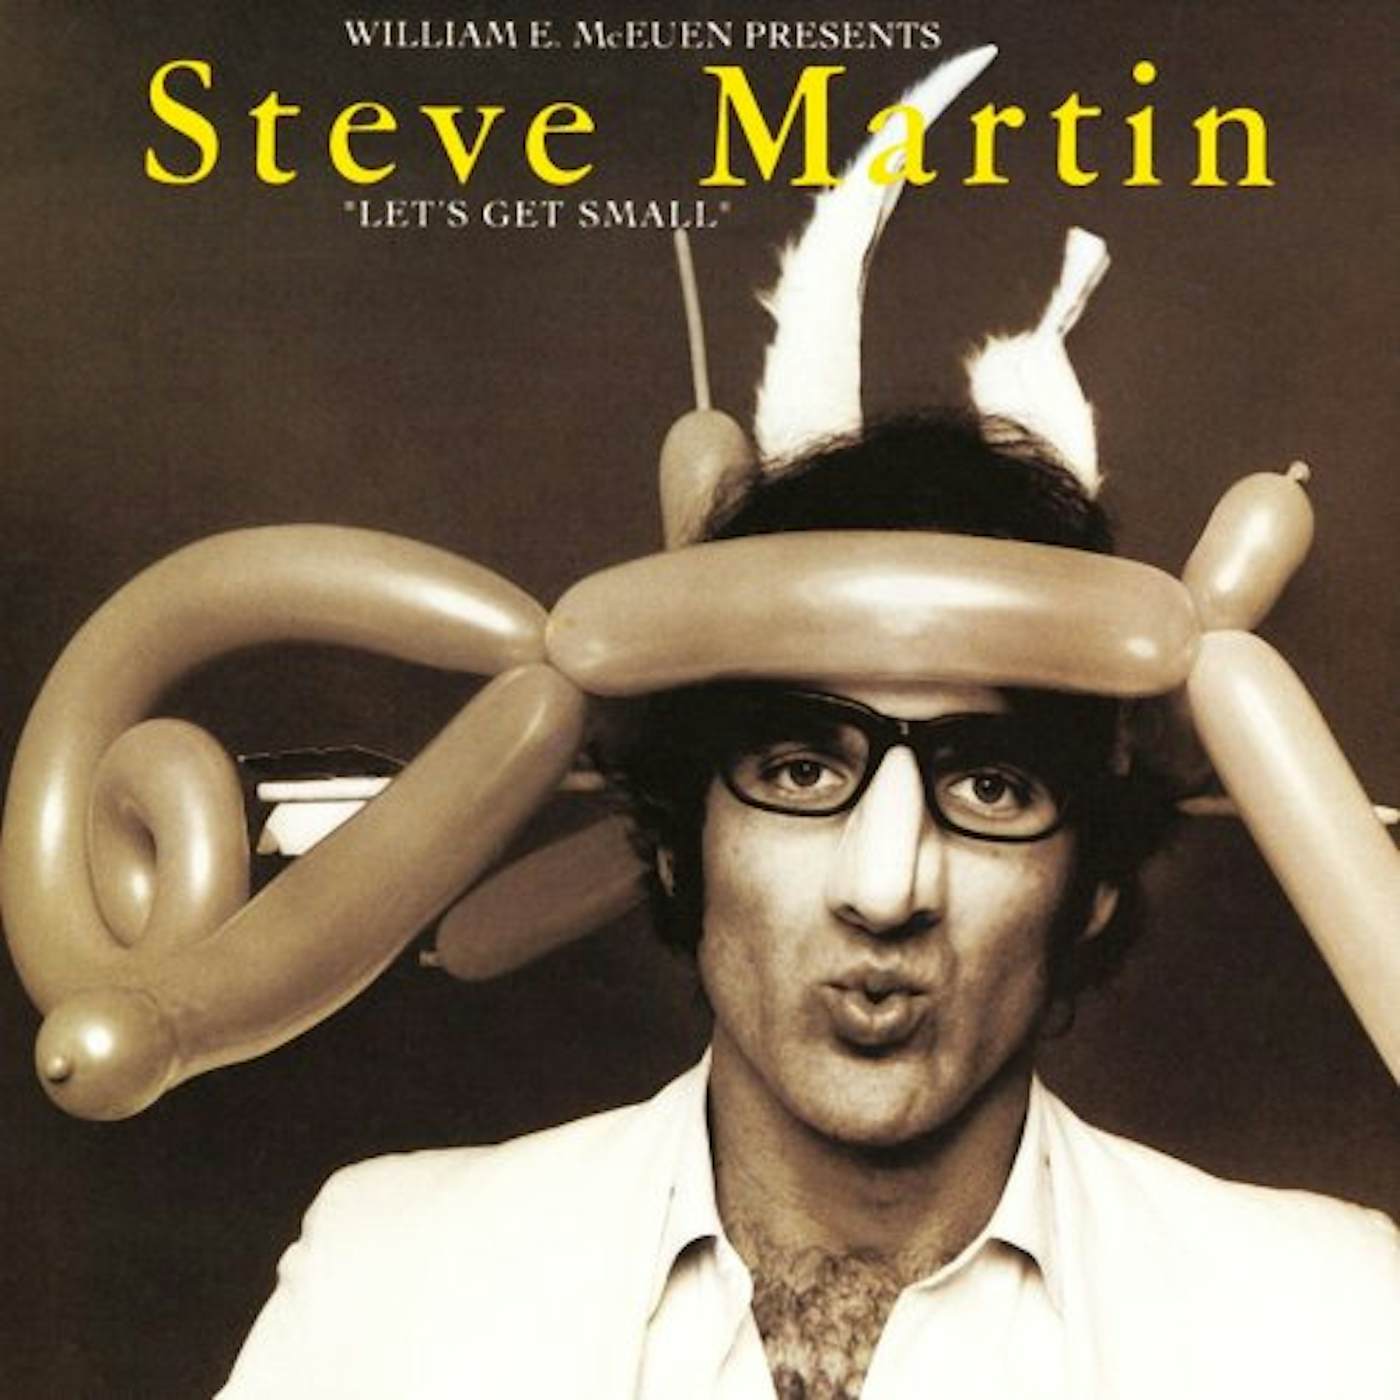 Steve Martin LET'S GET SMALL CD